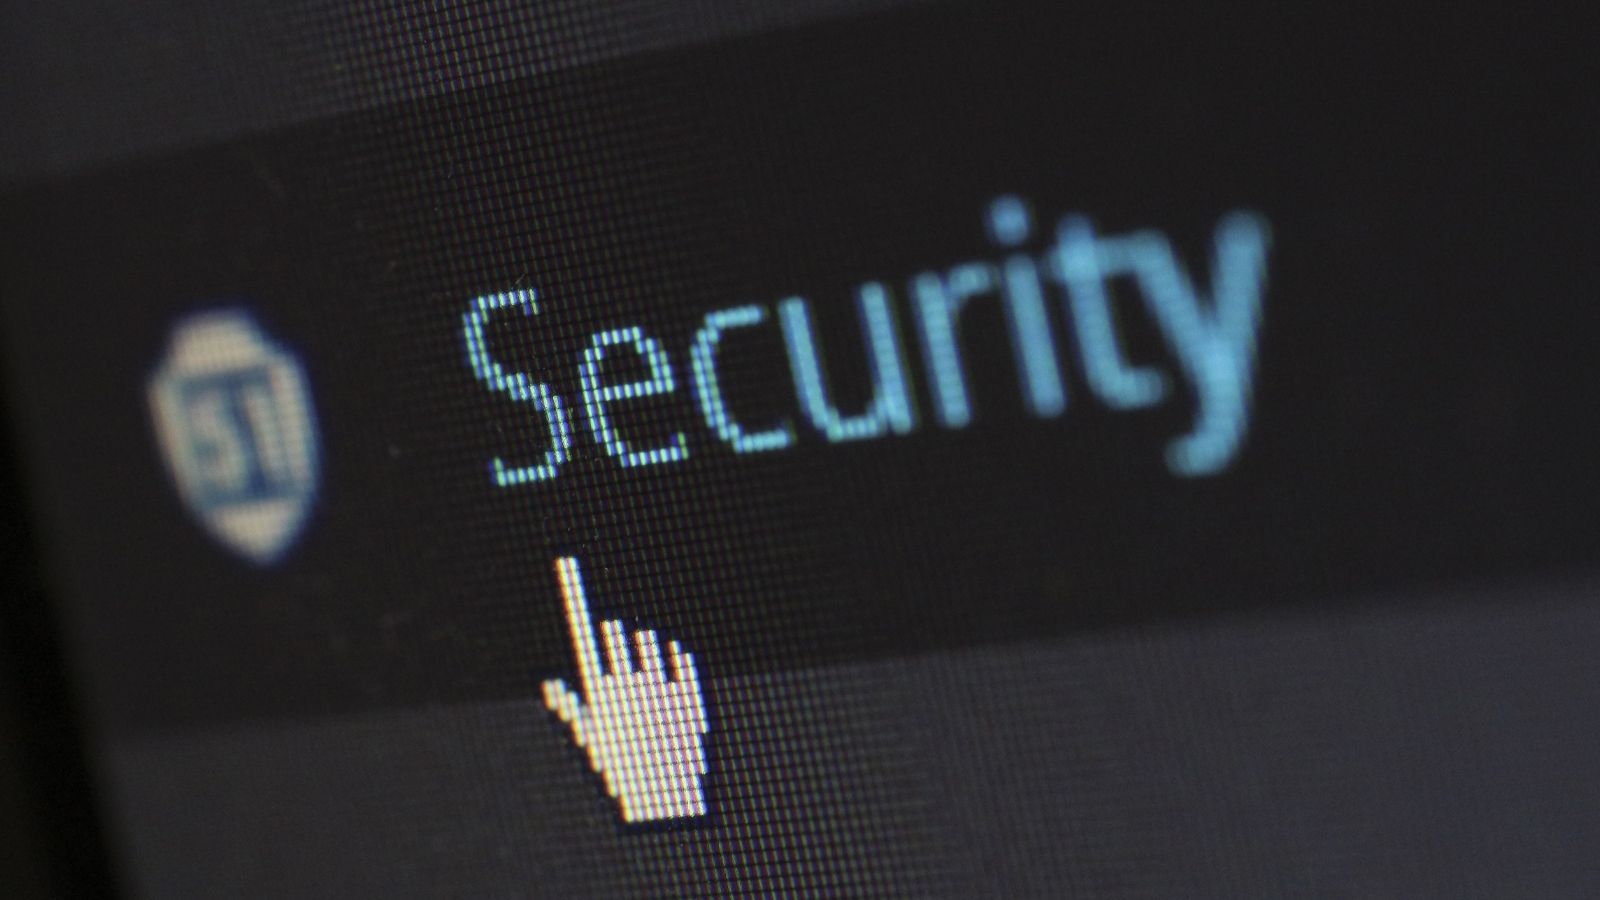 Od botnetów do phishingu – przegląd zagrożeń w 2020 roku Cybersecurity mediarfun cybersecurity